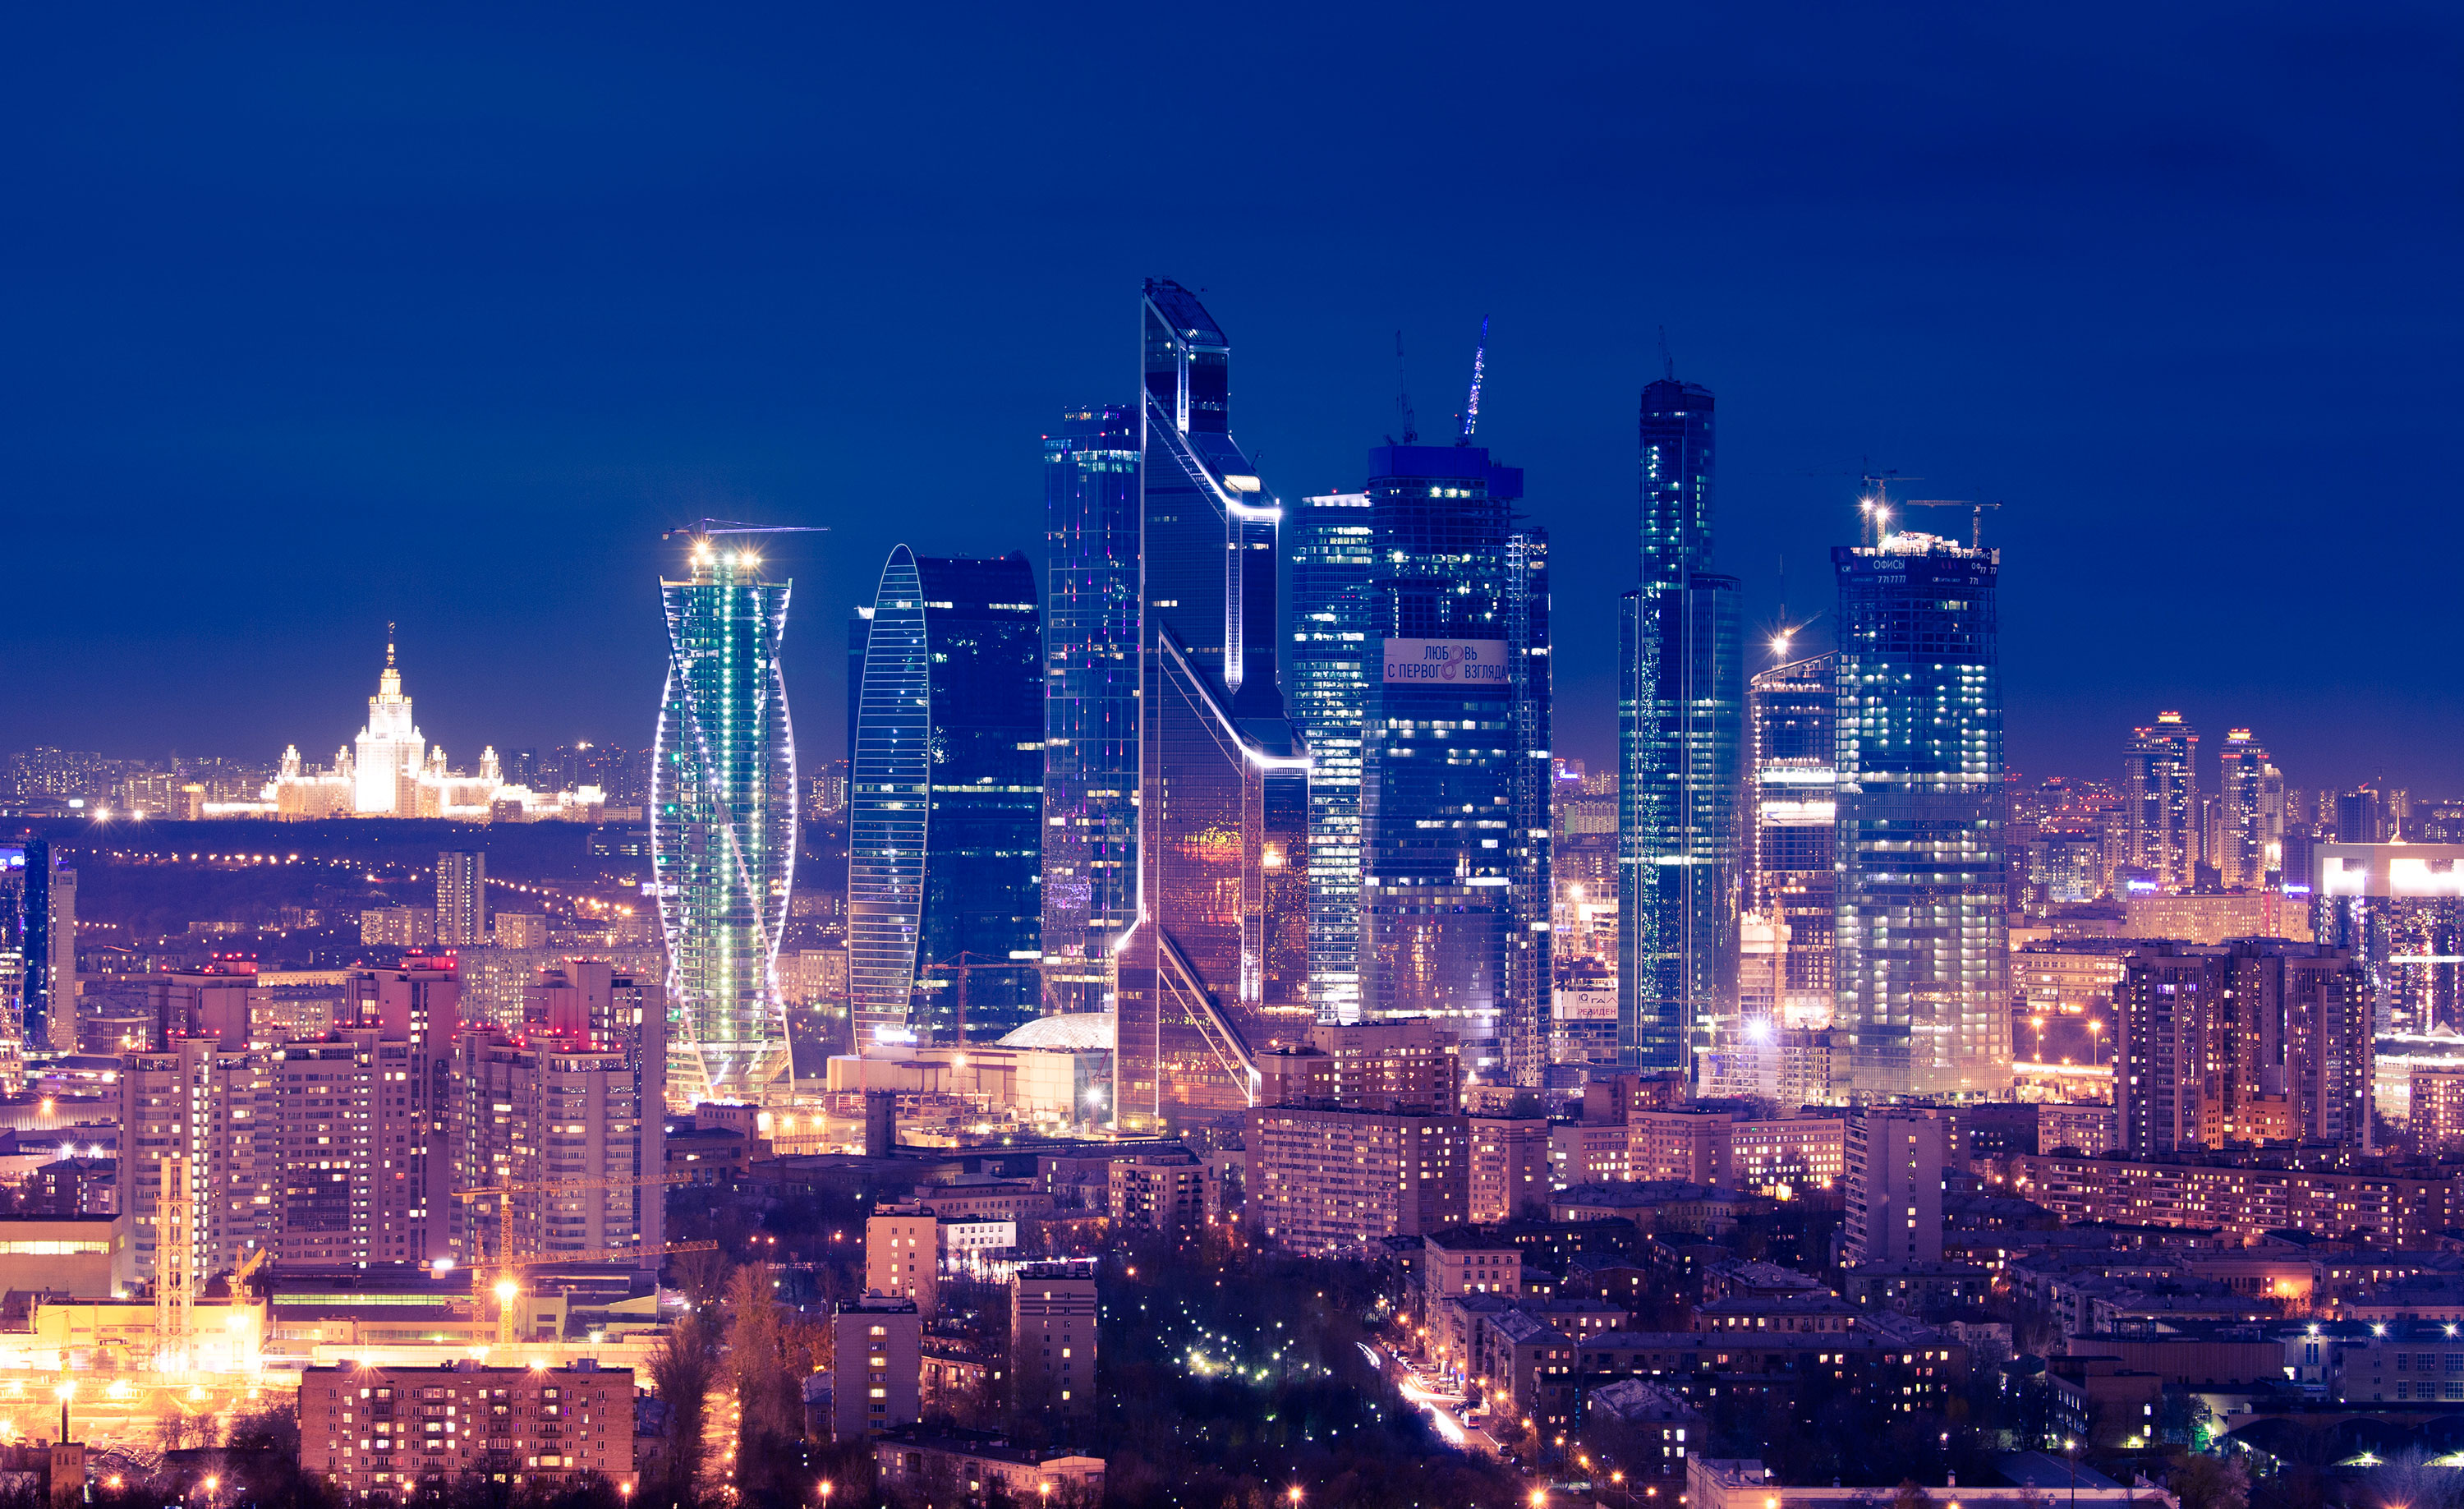 Москва-Сити вошла в список самых популярных столичных мест для съемок фильмов